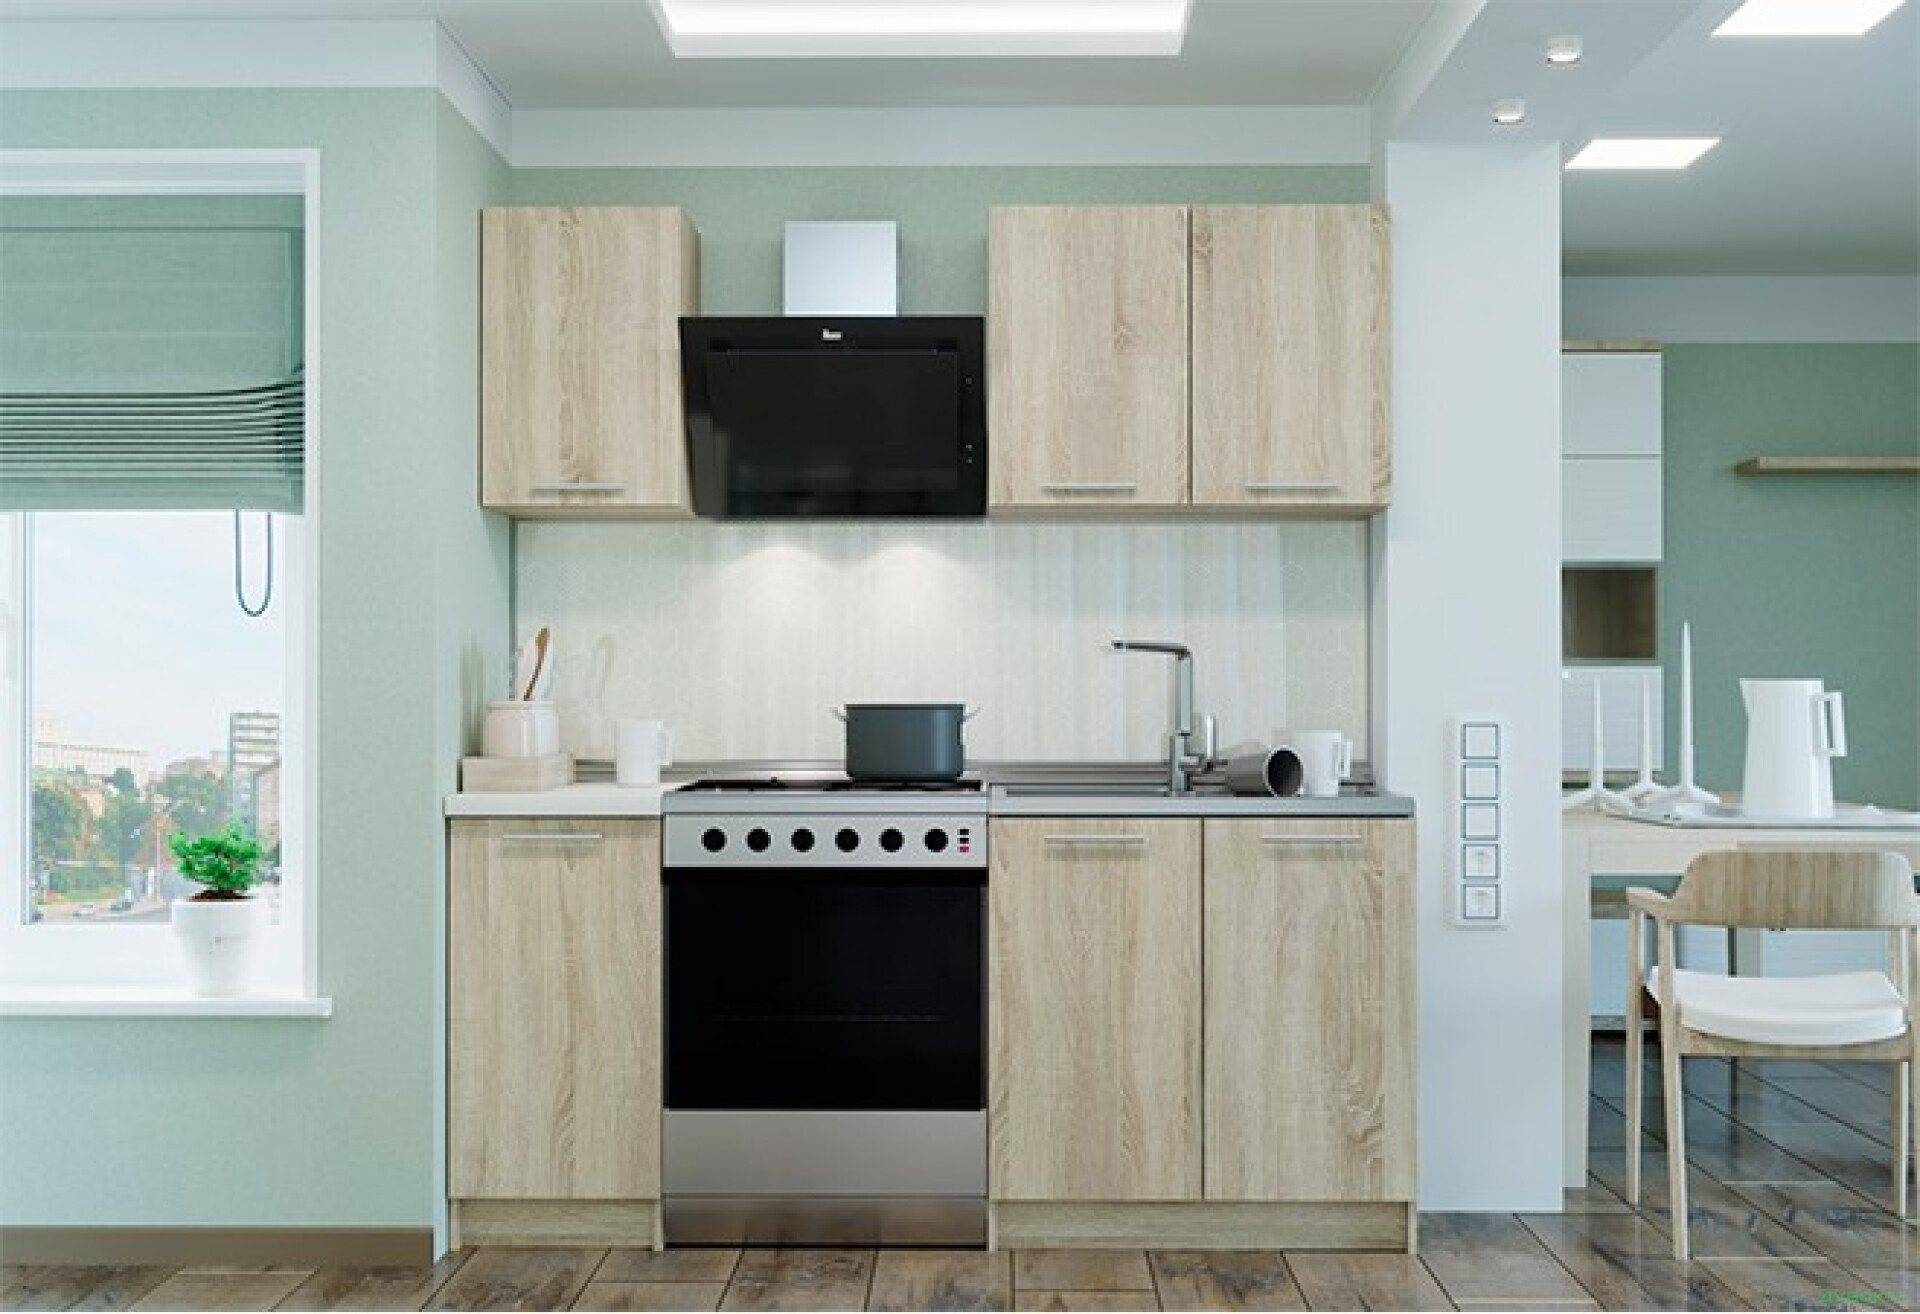 Фото 1 - Модульна кухня Марта / Ніка Kredens furniture